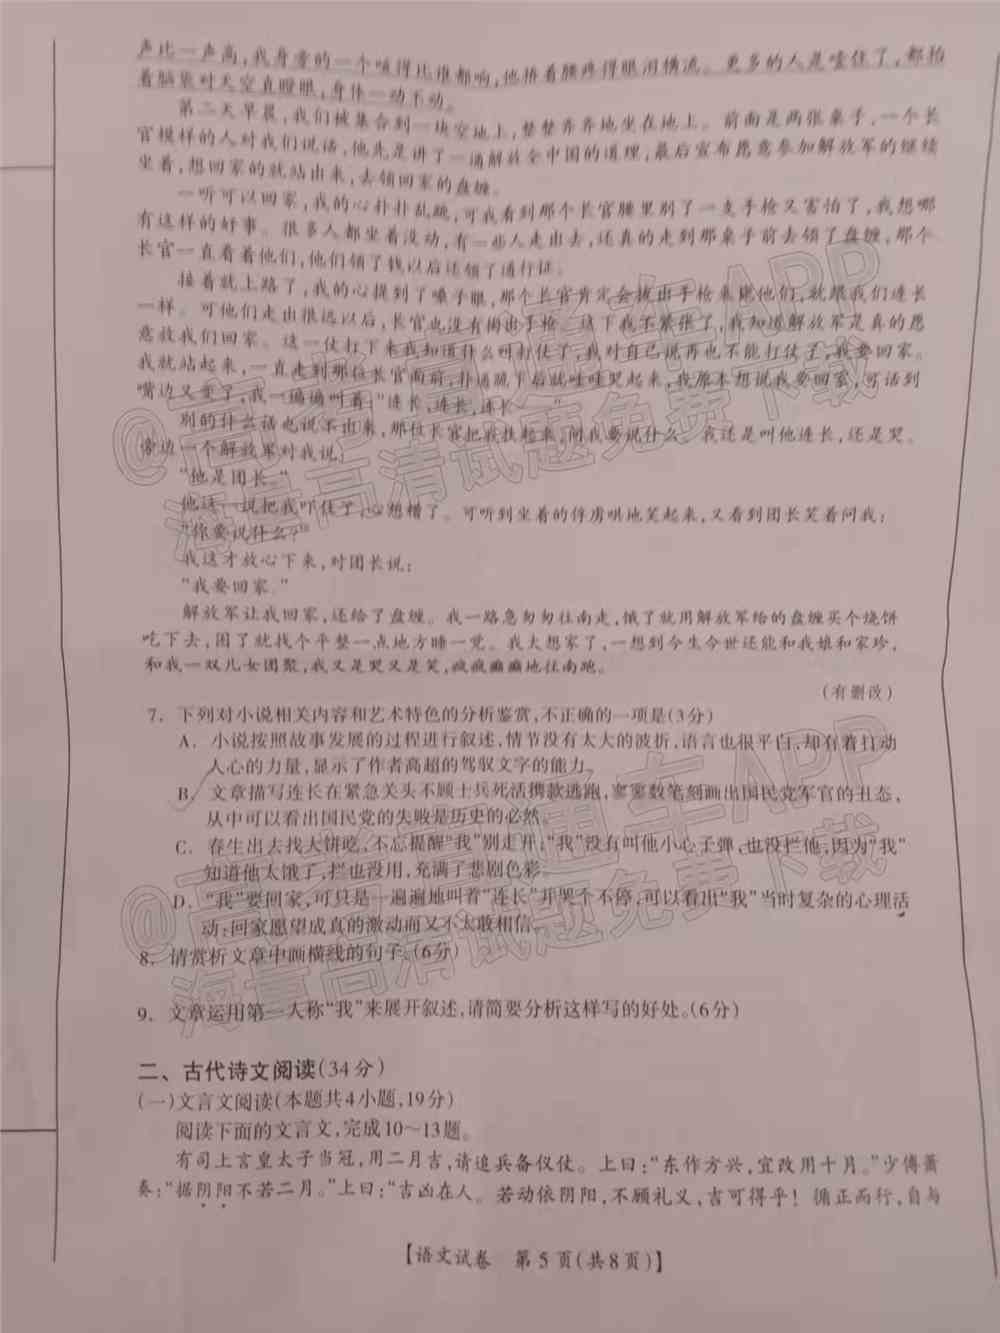 2022年桂林二调各科试卷及答案解析汇总（持续更新）